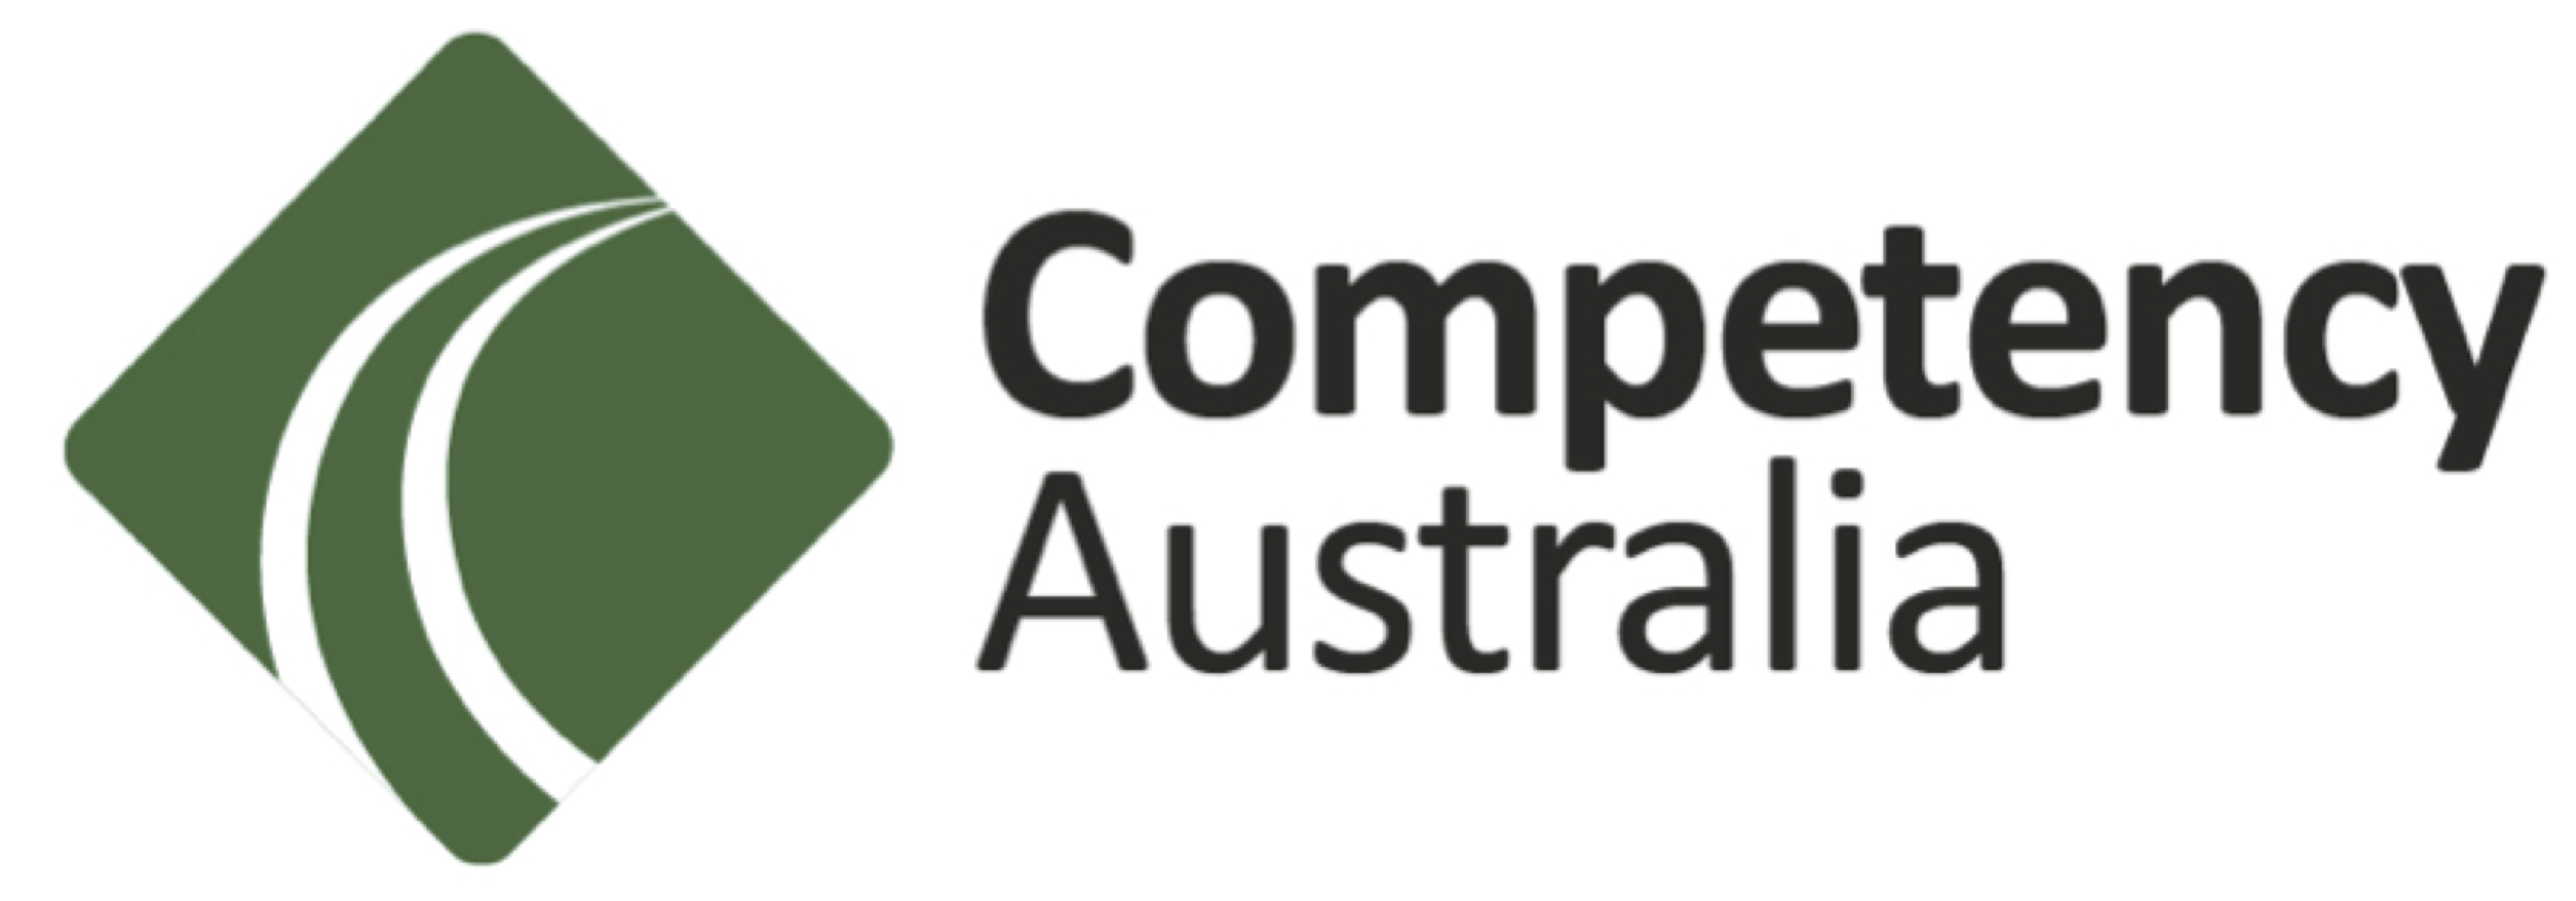 Competency Australia